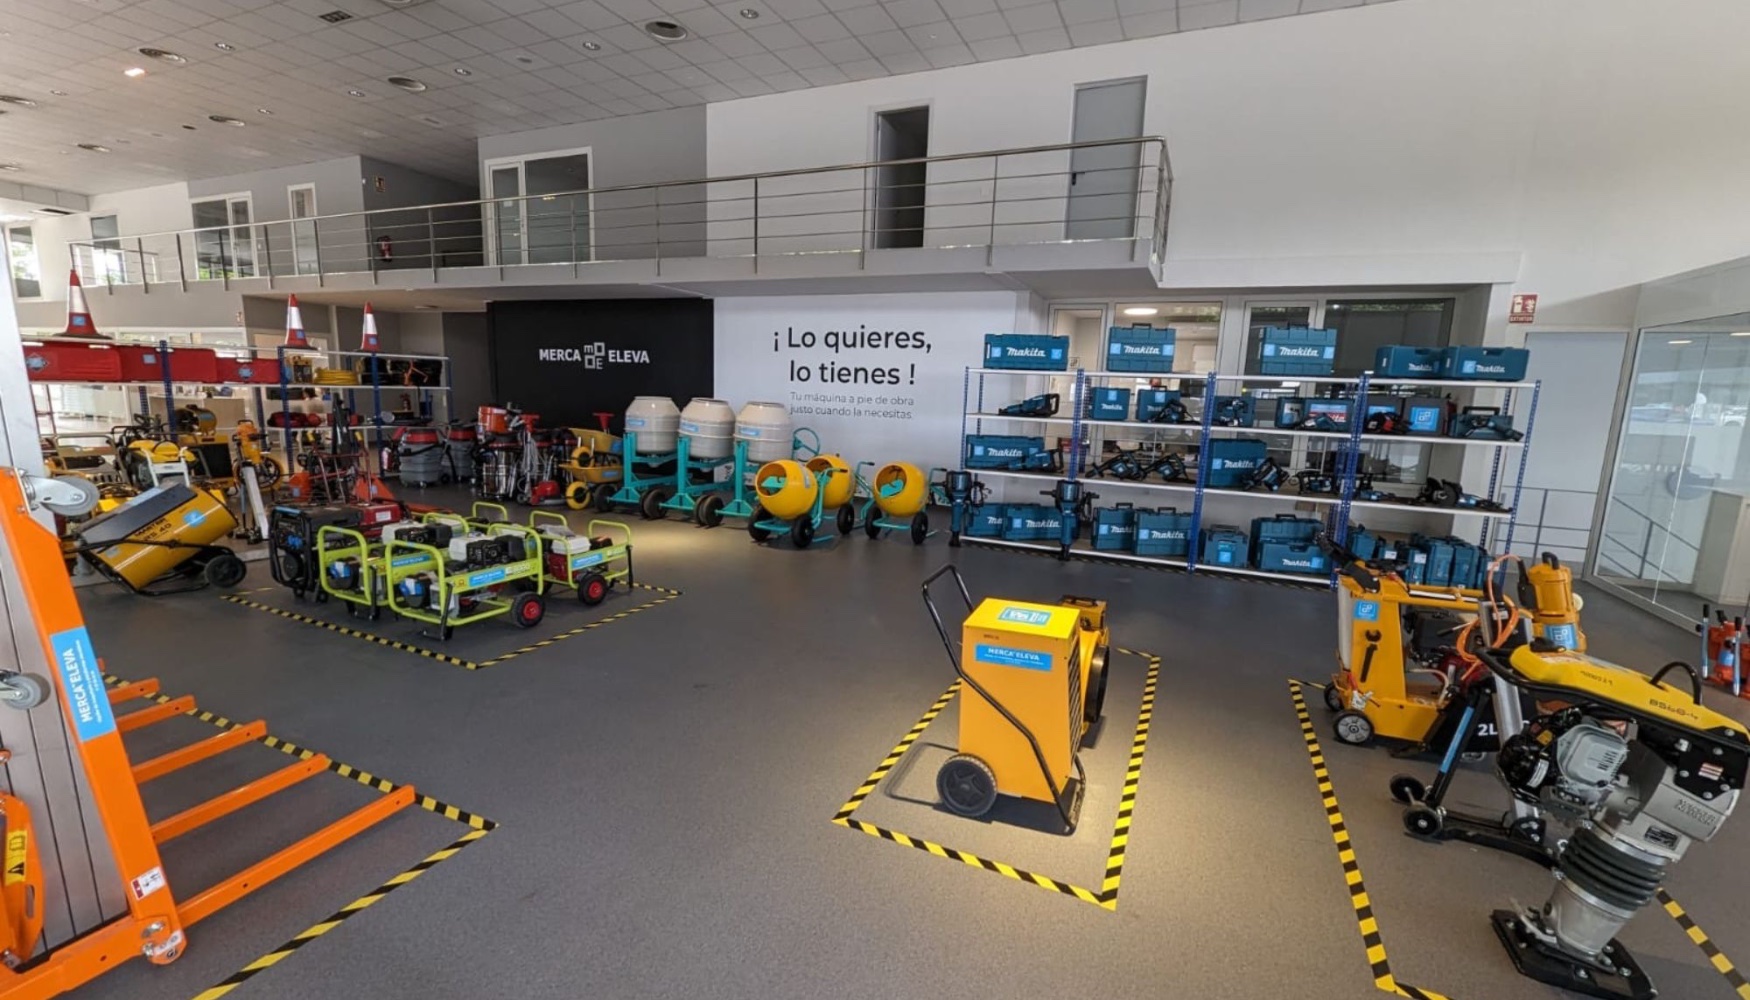 Nueva tienda de maquinaria pequea de Merca-Eleva en Vilafranca del Peneds